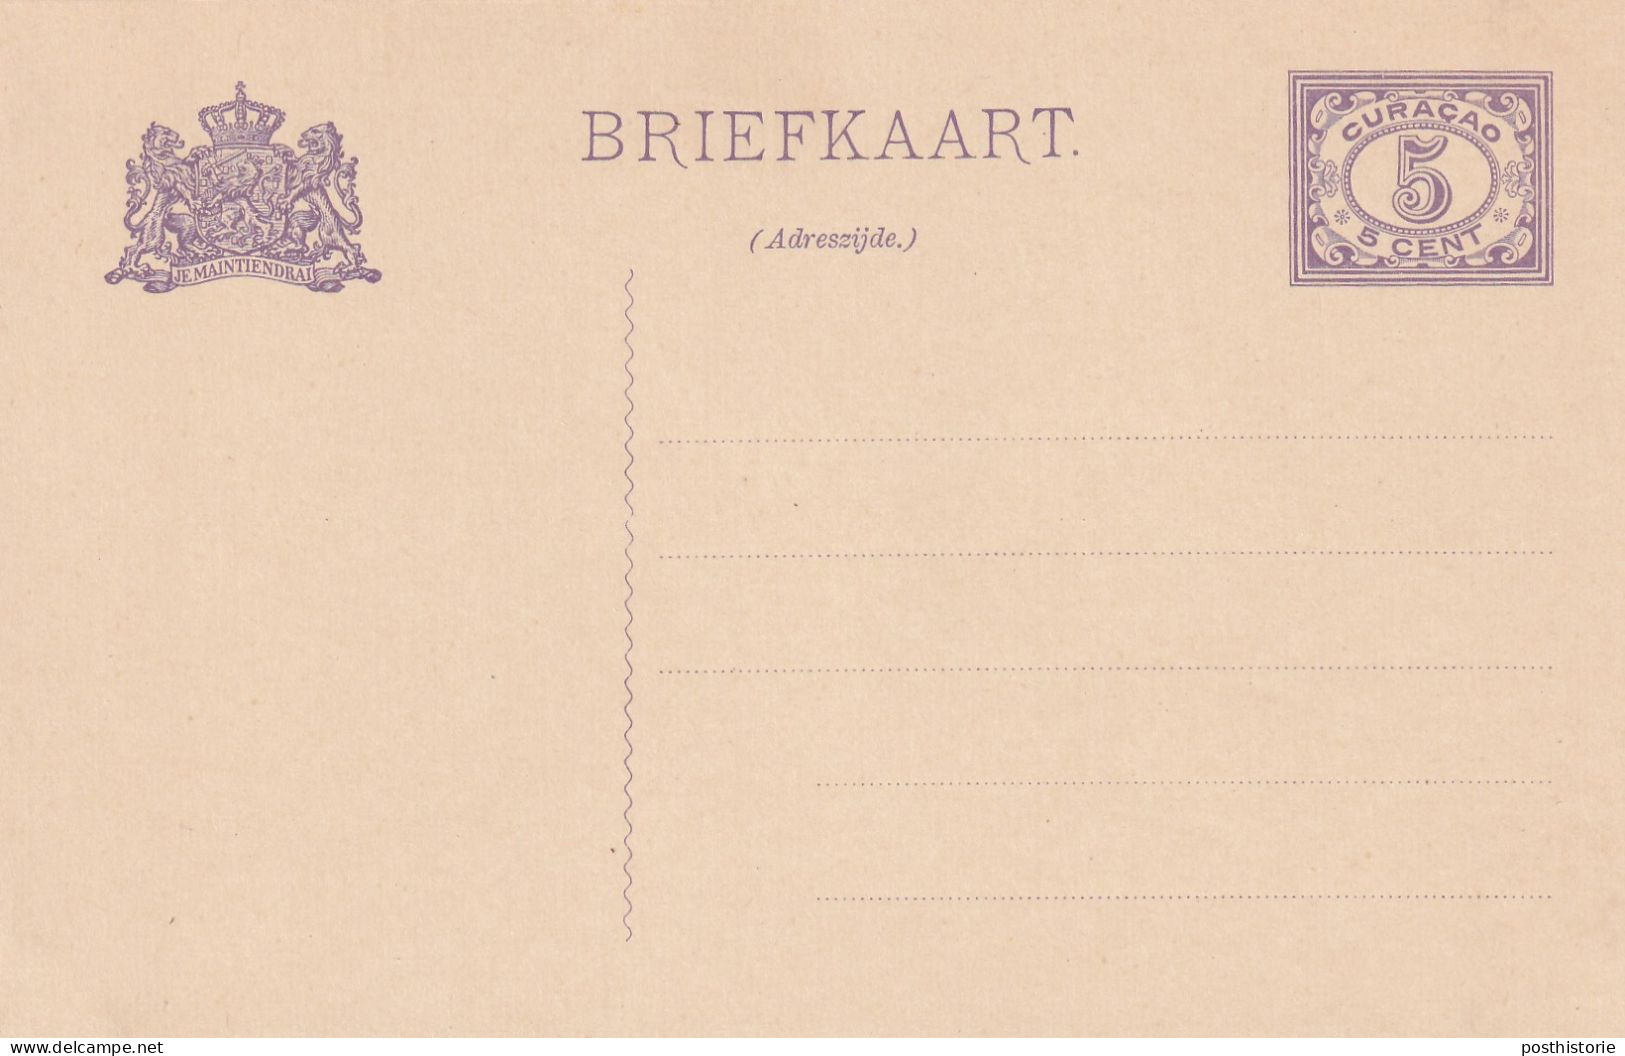 5 Verschillende Ongebruikte Briefkaarten Curacao - Material Postal